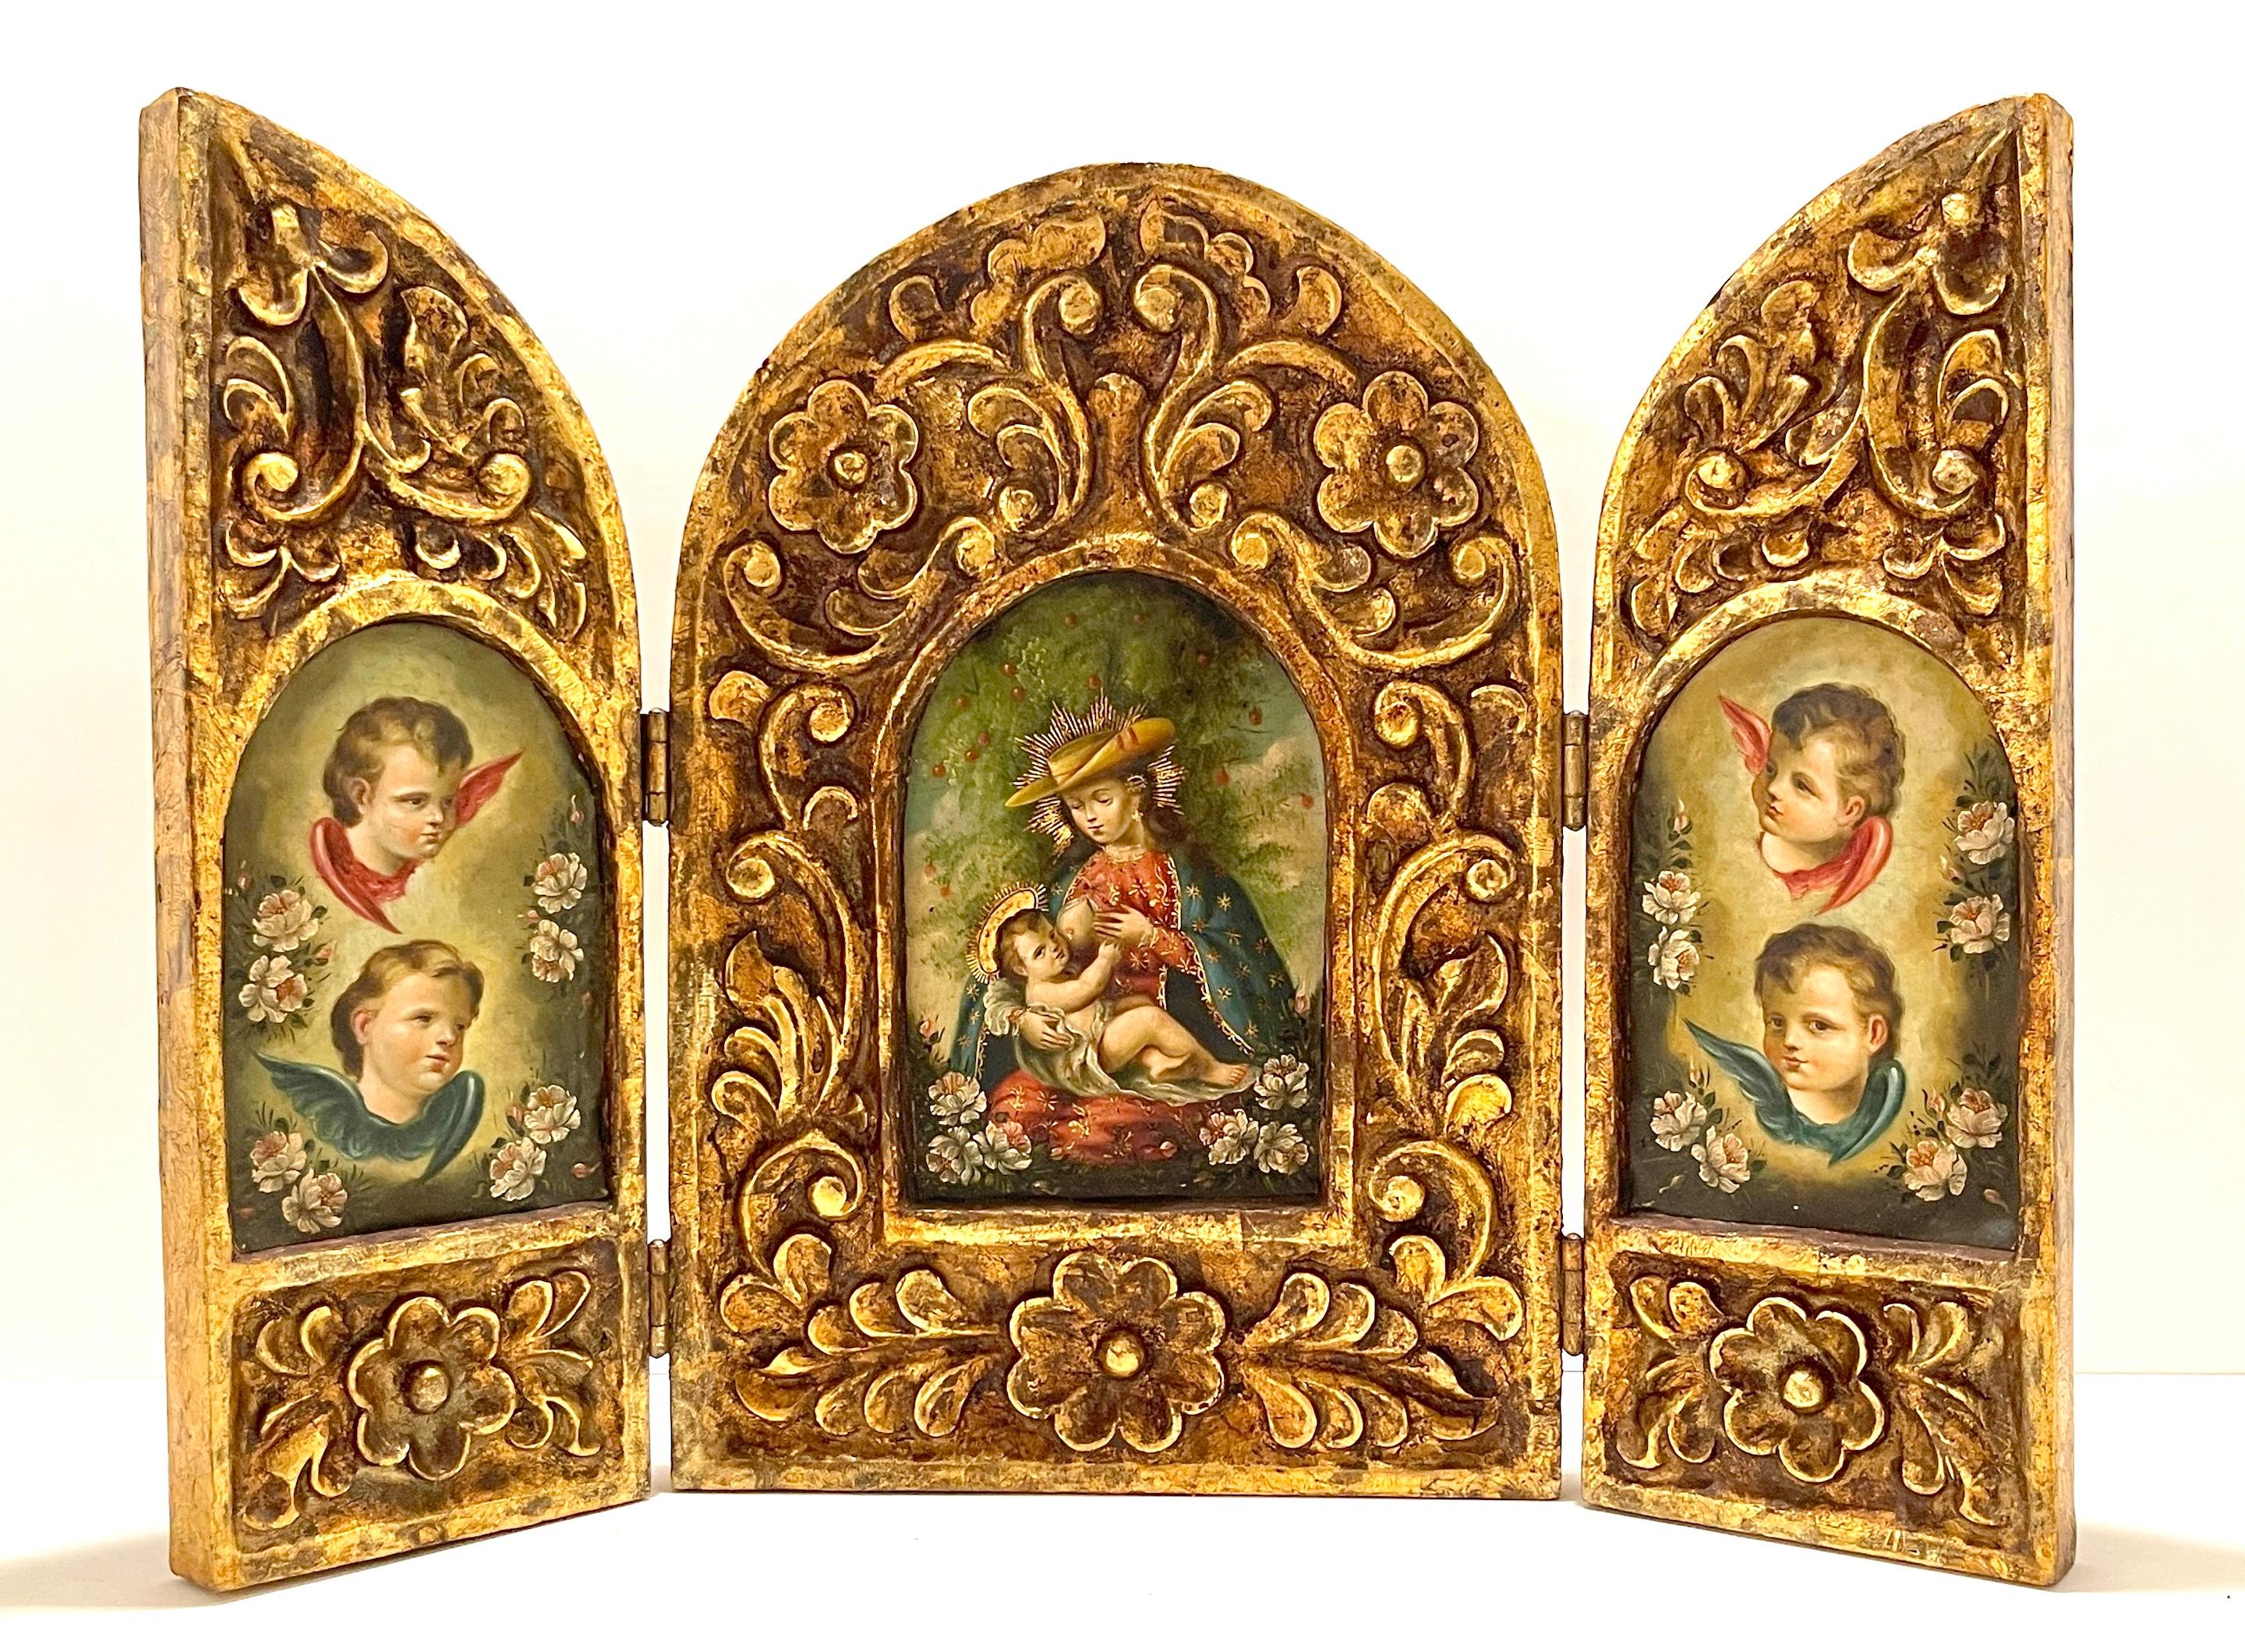 Triptyque en bois doré sculpté de style colonial espagnol du 19e siècle représentant la Vierge Marie et le Christ Enfant
Fin du 19e siècle, Amérique du Sud

D'une qualité exceptionnelle, l'icône de dévotion à trois panneaux articulés. En bois